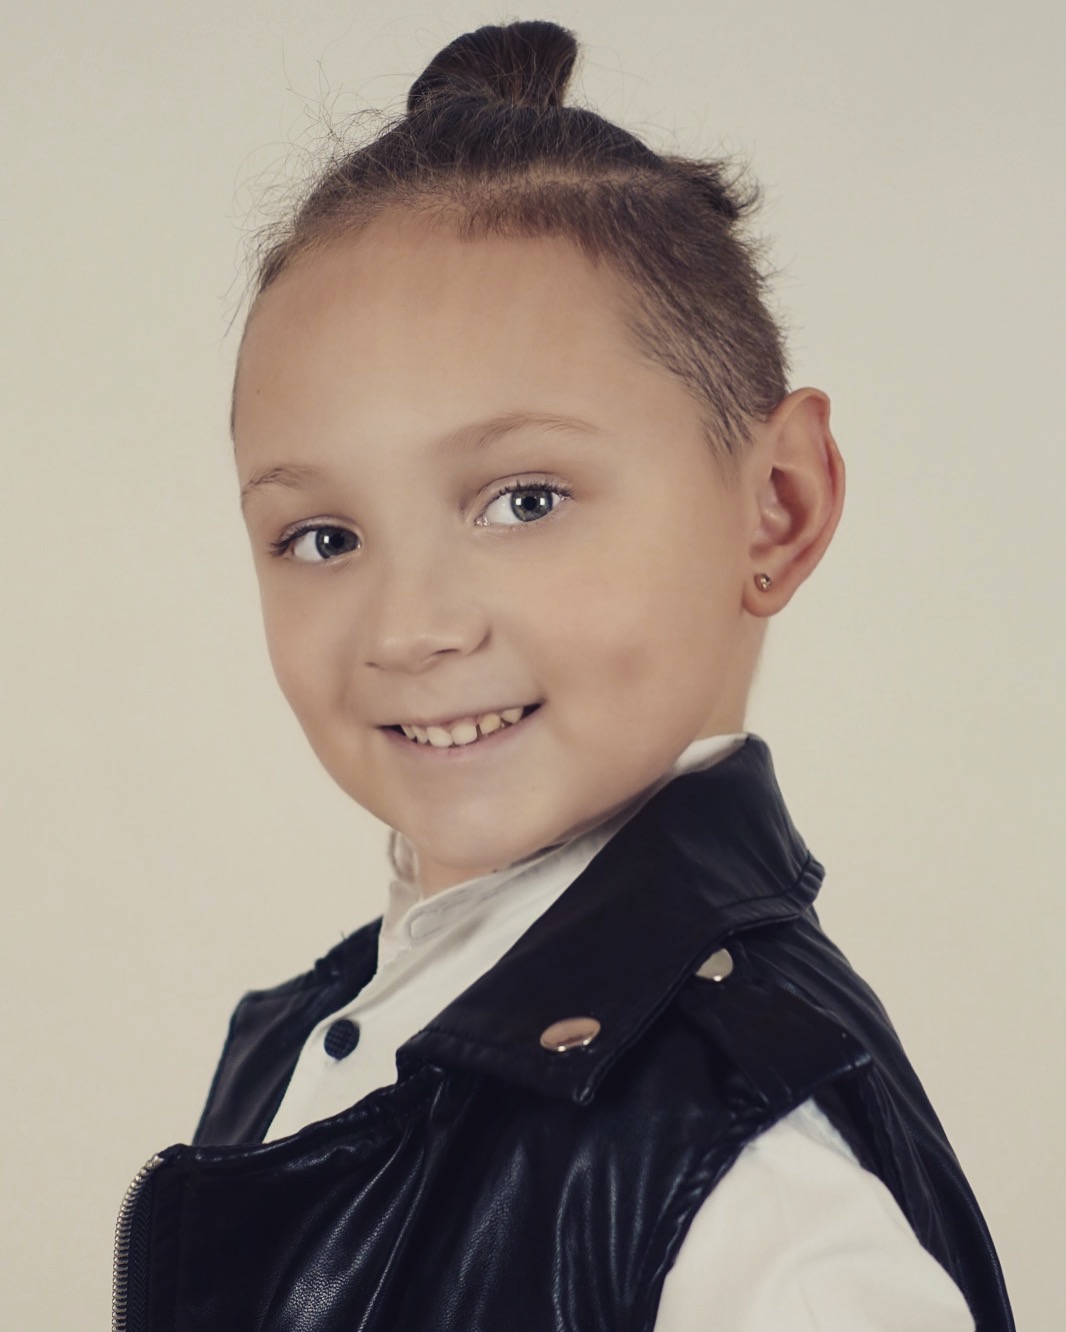 Богдан Лазарев - аккредитованная модель для участия в подиумных показах на Междунродной Детской Неделе моды